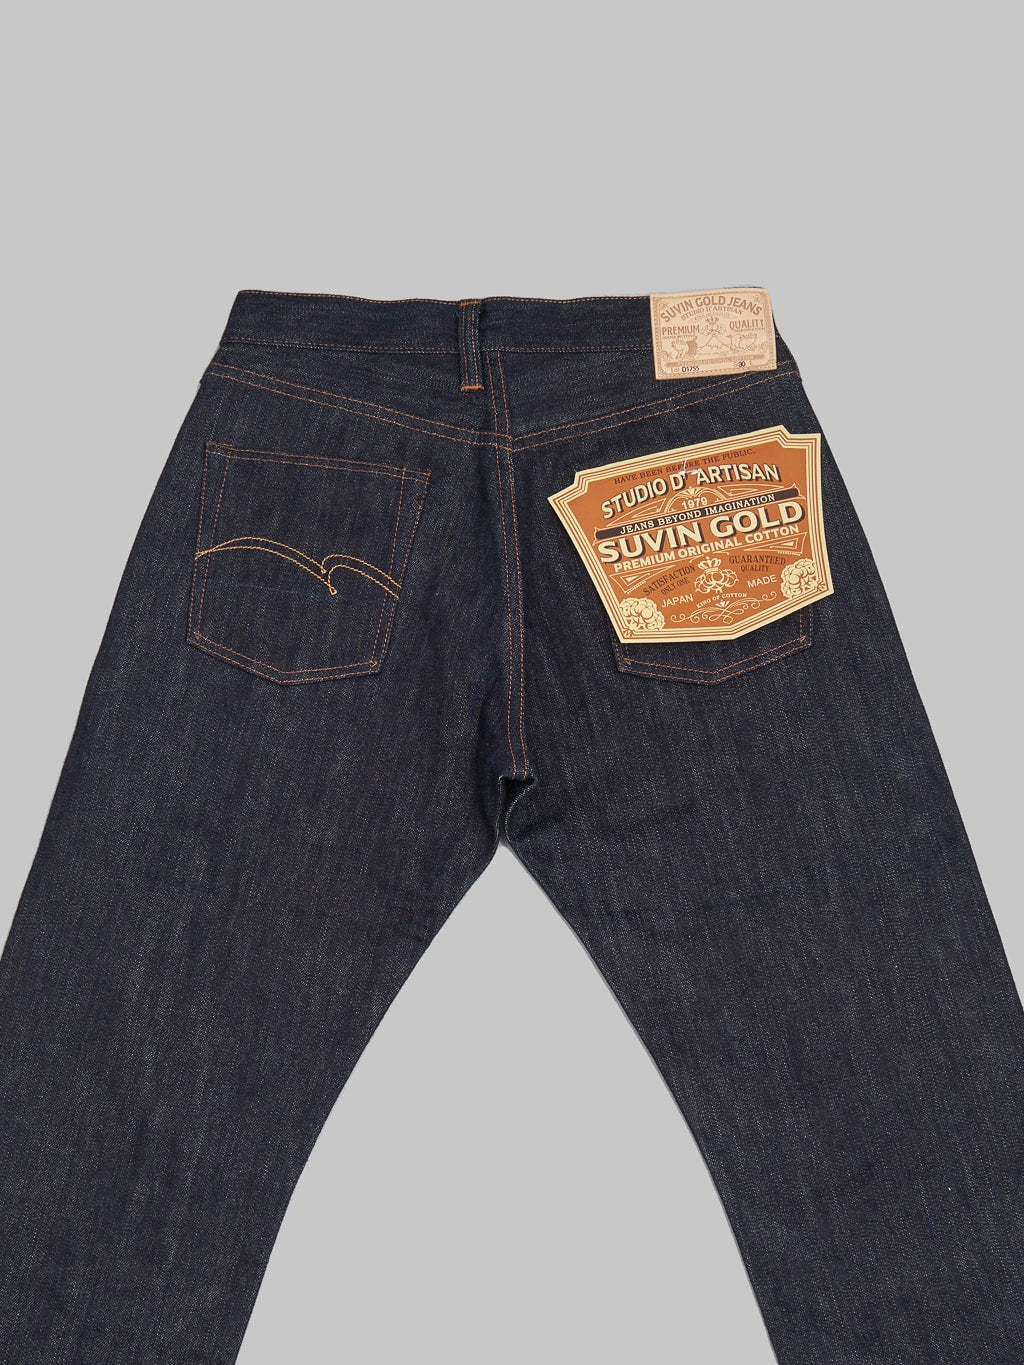 Studio DArtisan Suvin Gold D1755 Regular Straight Narrow Jeans back pockets